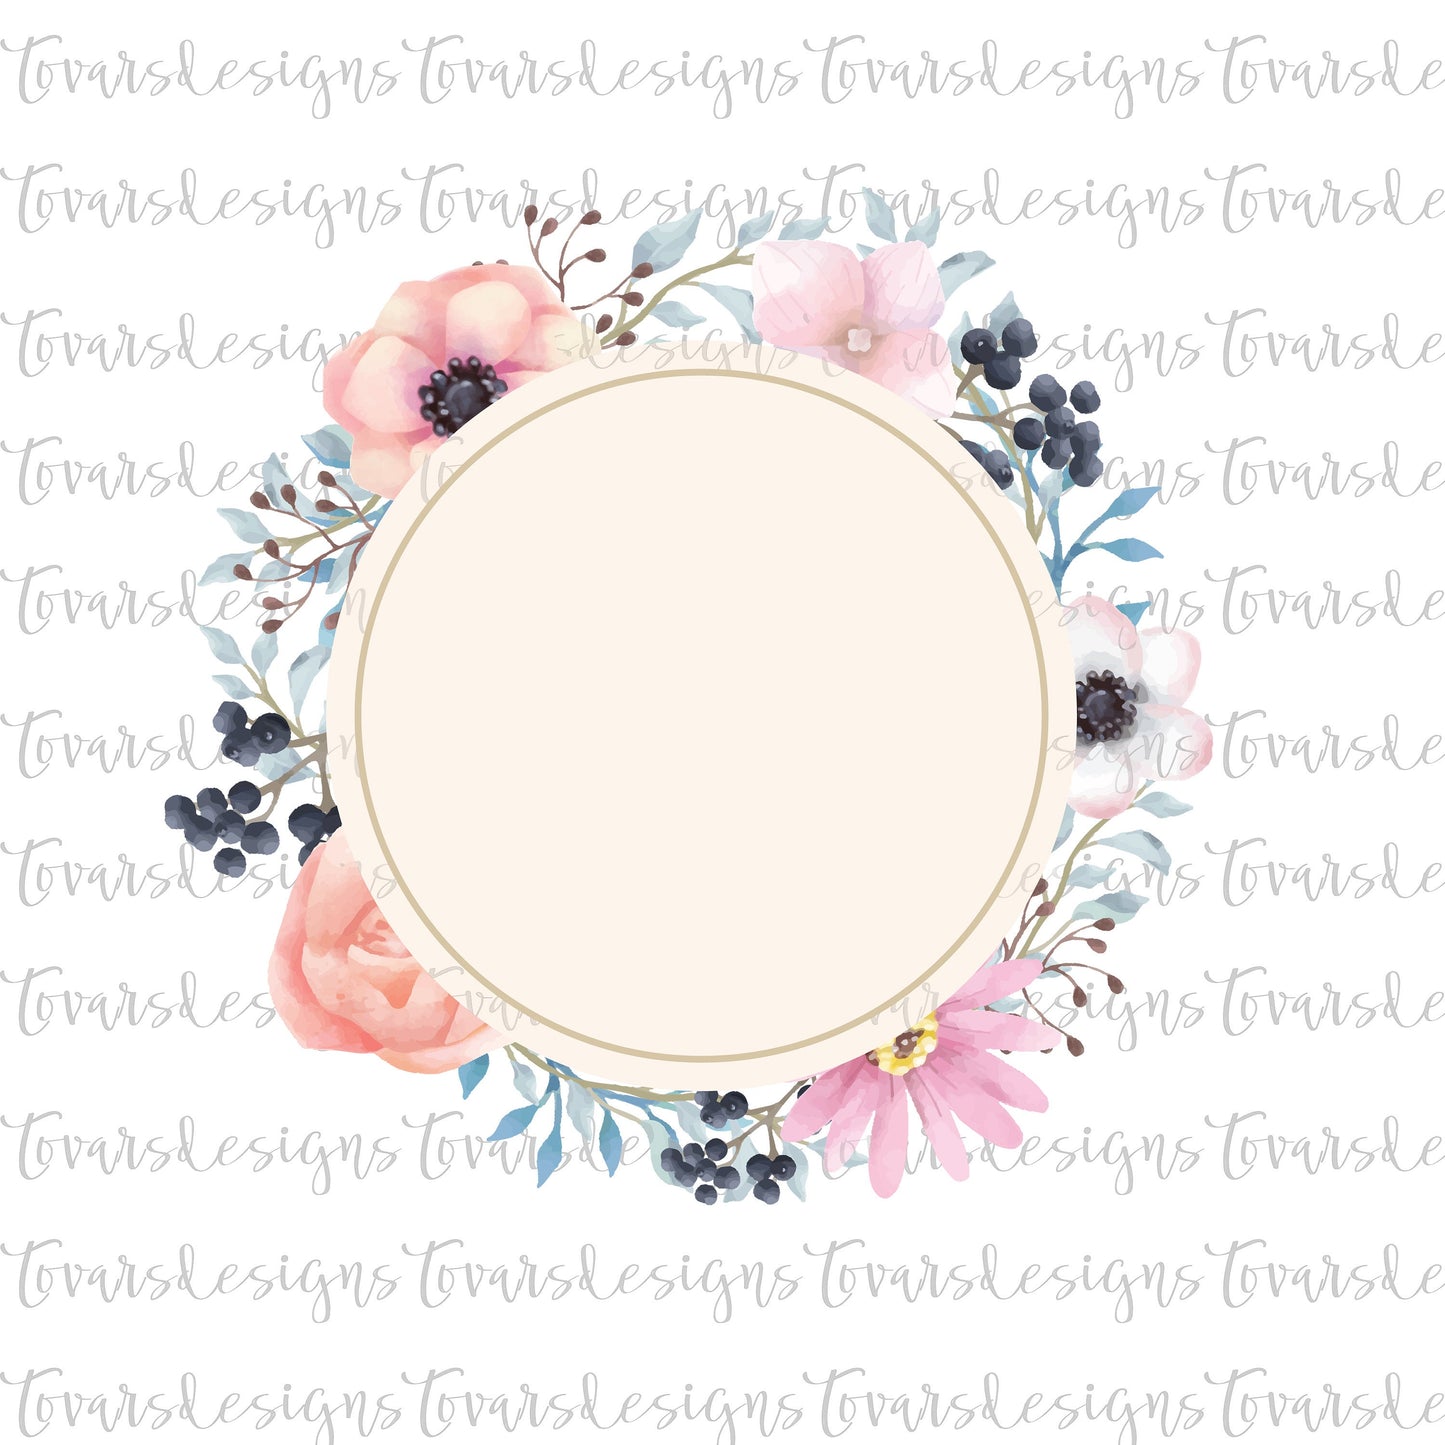 Floral Frame Sublimation Design, Floral Frame Png Download, Flower Frame Instant Download, Flower Sublimation Digital Download, Flower png